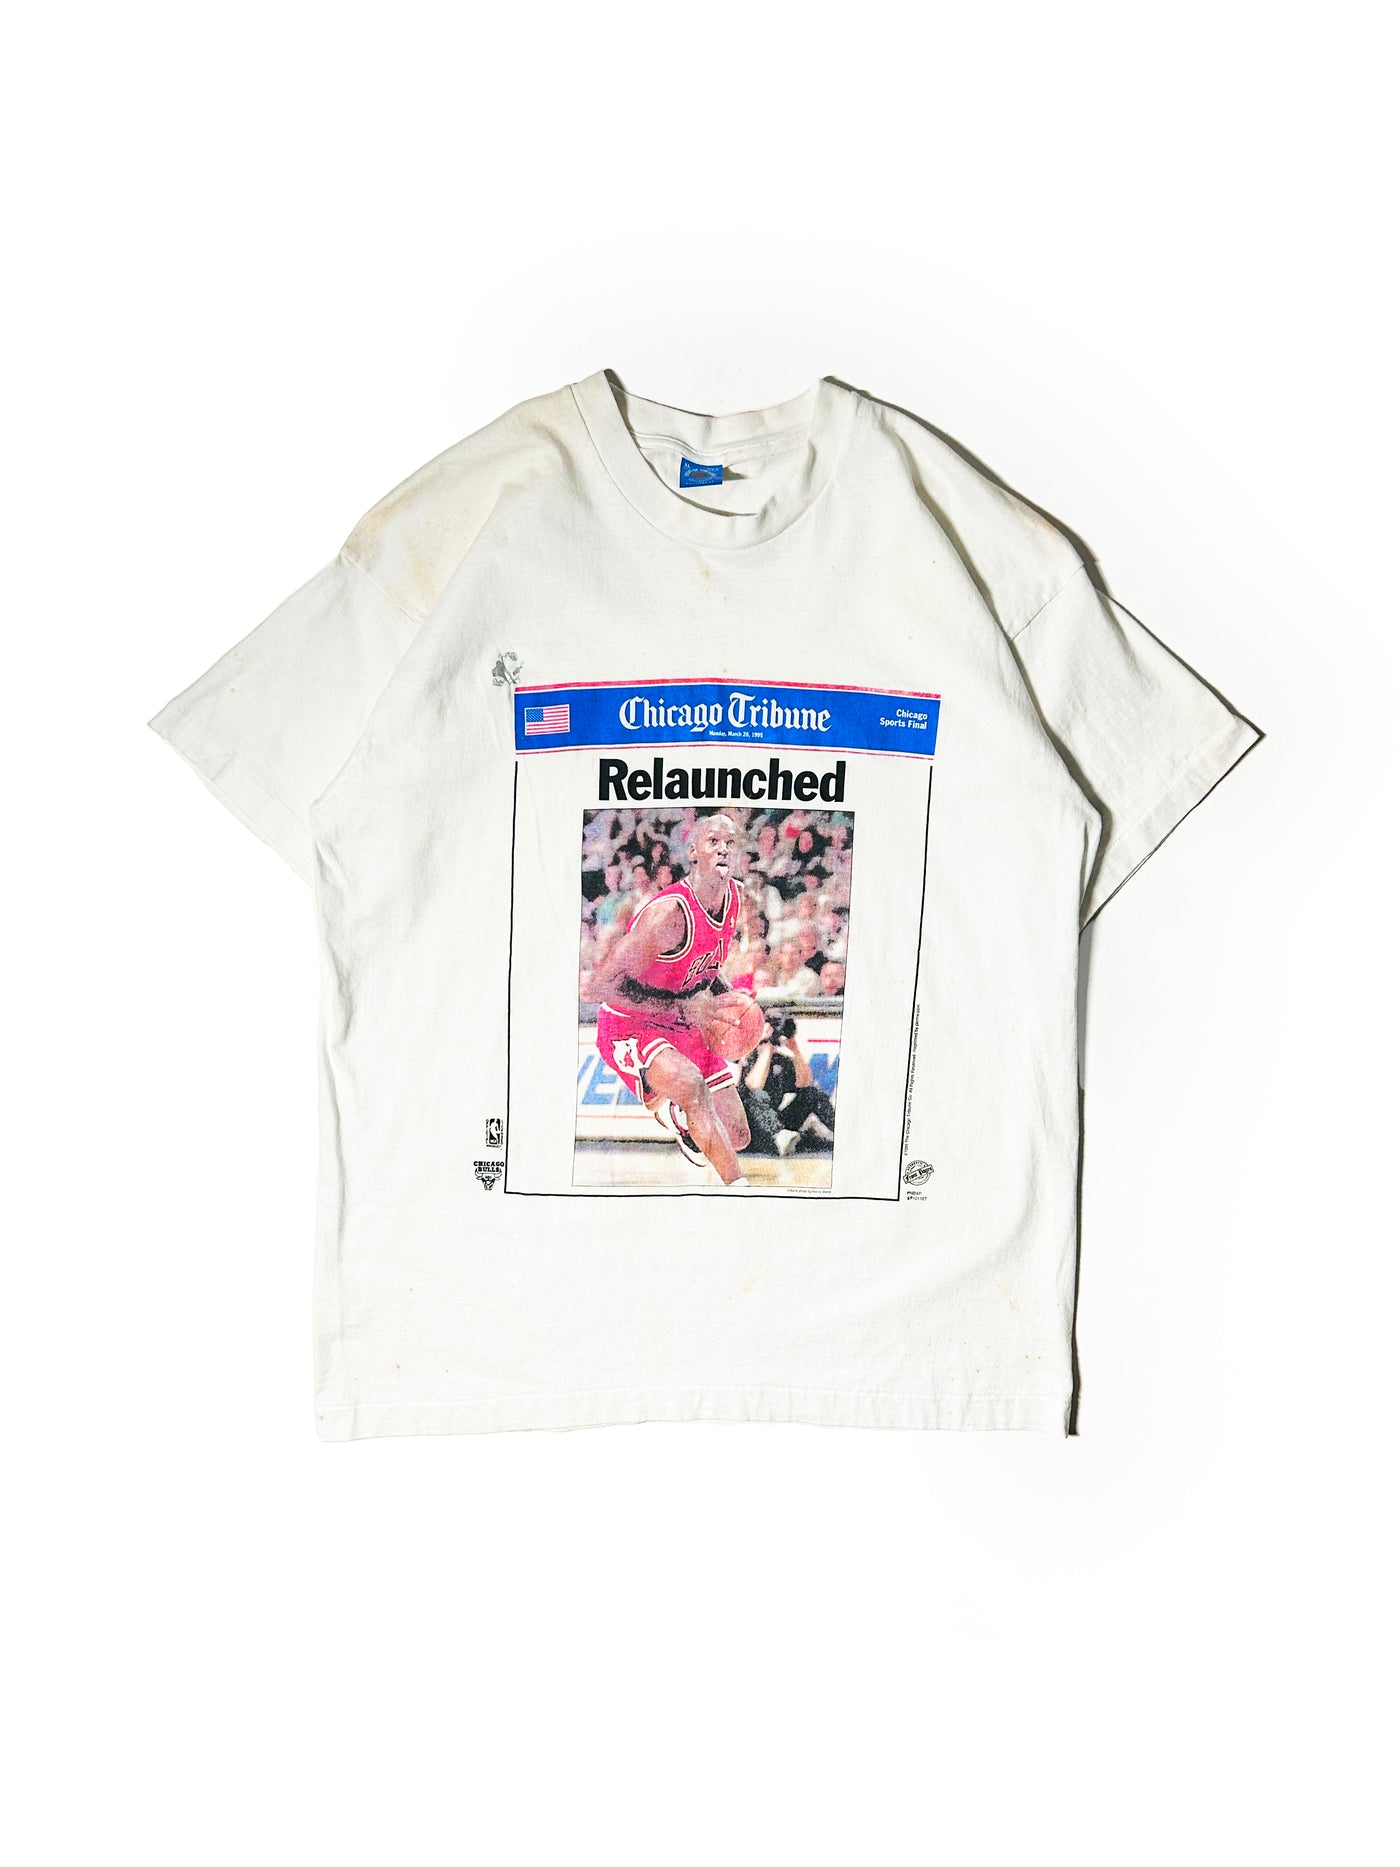 Vintage 1995 Chicago Tribune Michael Jordan Relaunched T-Shirt